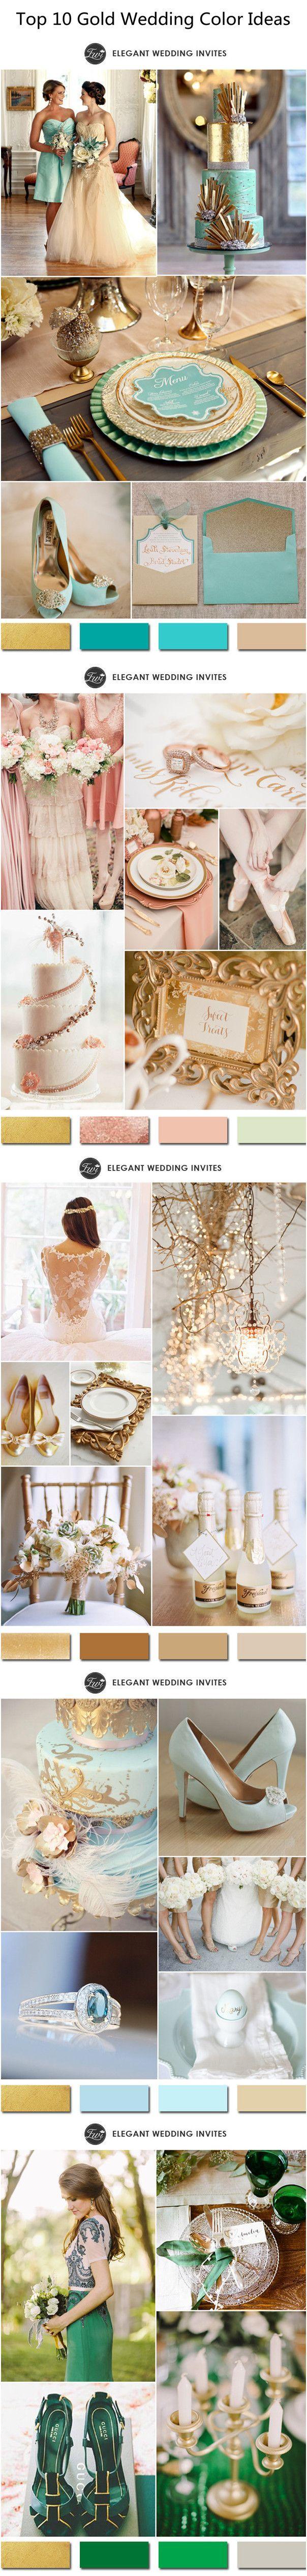 زفاف - 10 Hottest Gold Wedding Color Ideas-2016 Wedding Trends Part Two